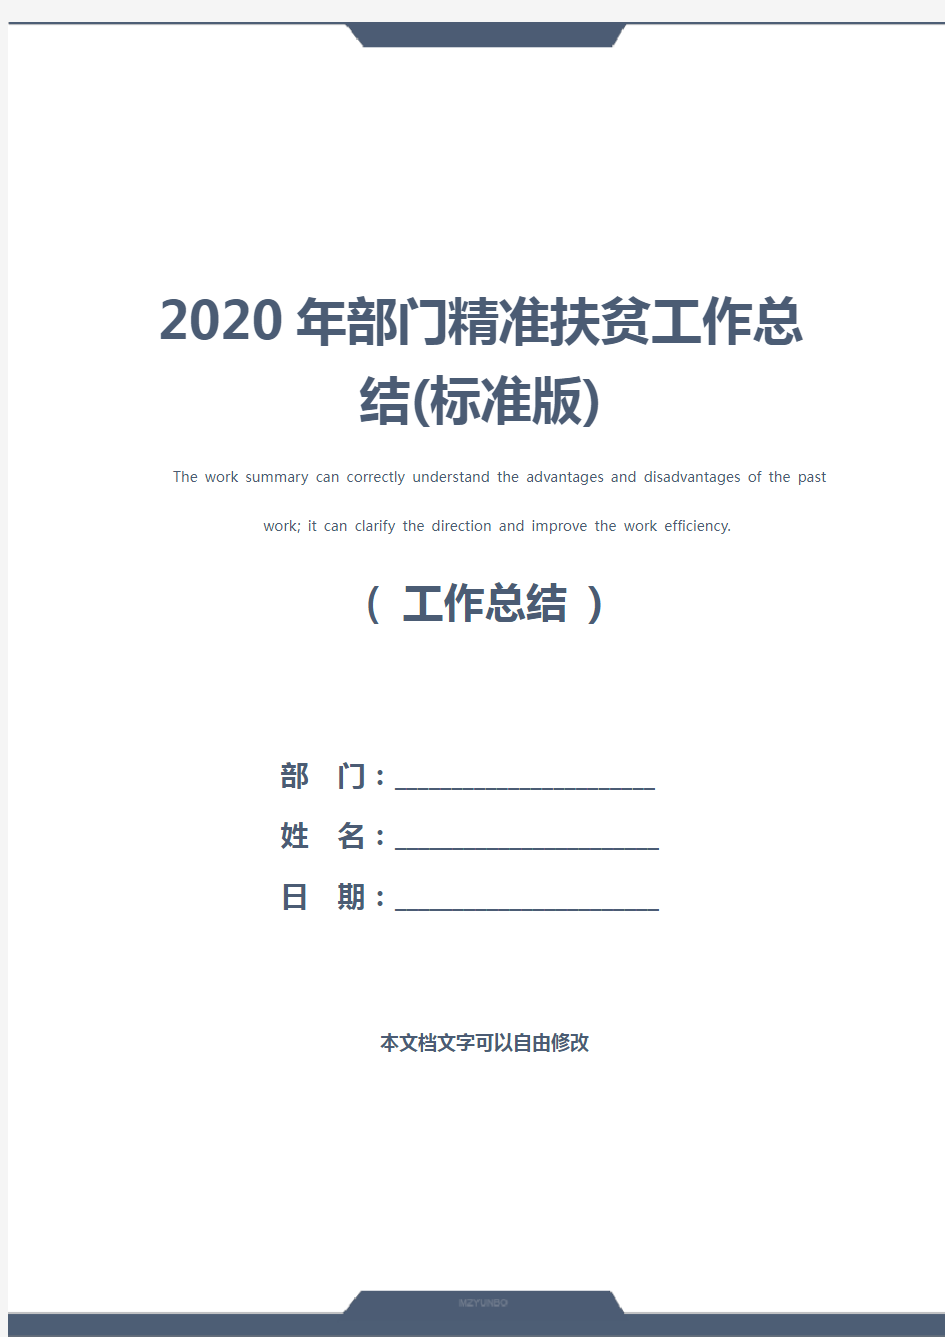 2020年部门精准扶贫工作总结(标准版)